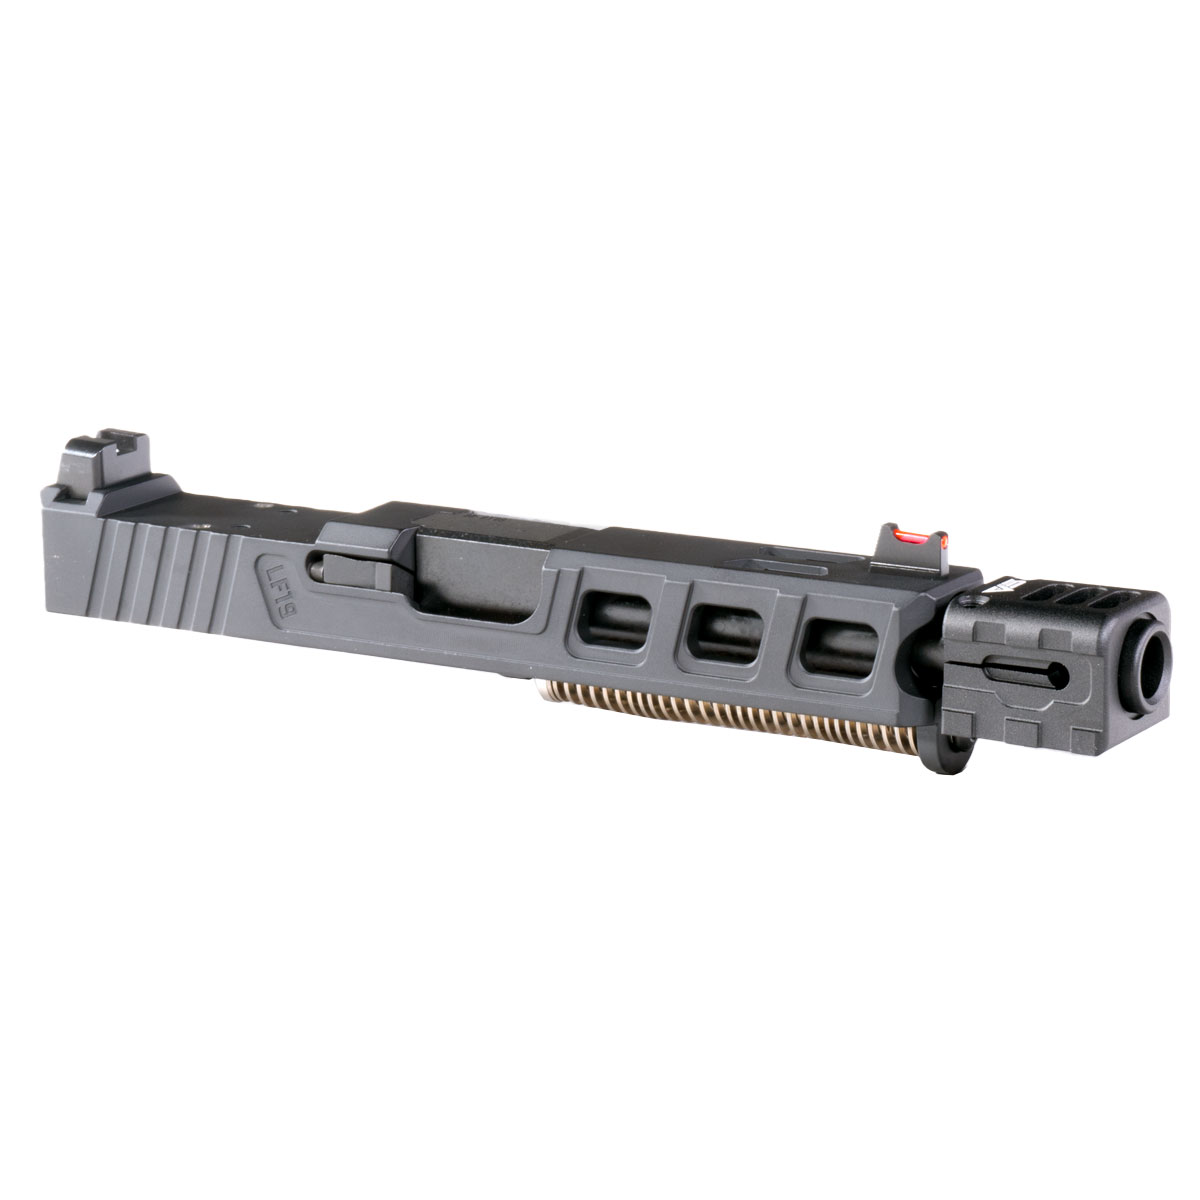 DTT 'Brenna' 9mm Complete Slide Kit - Glock 19 Gen 1-3 Compatible
